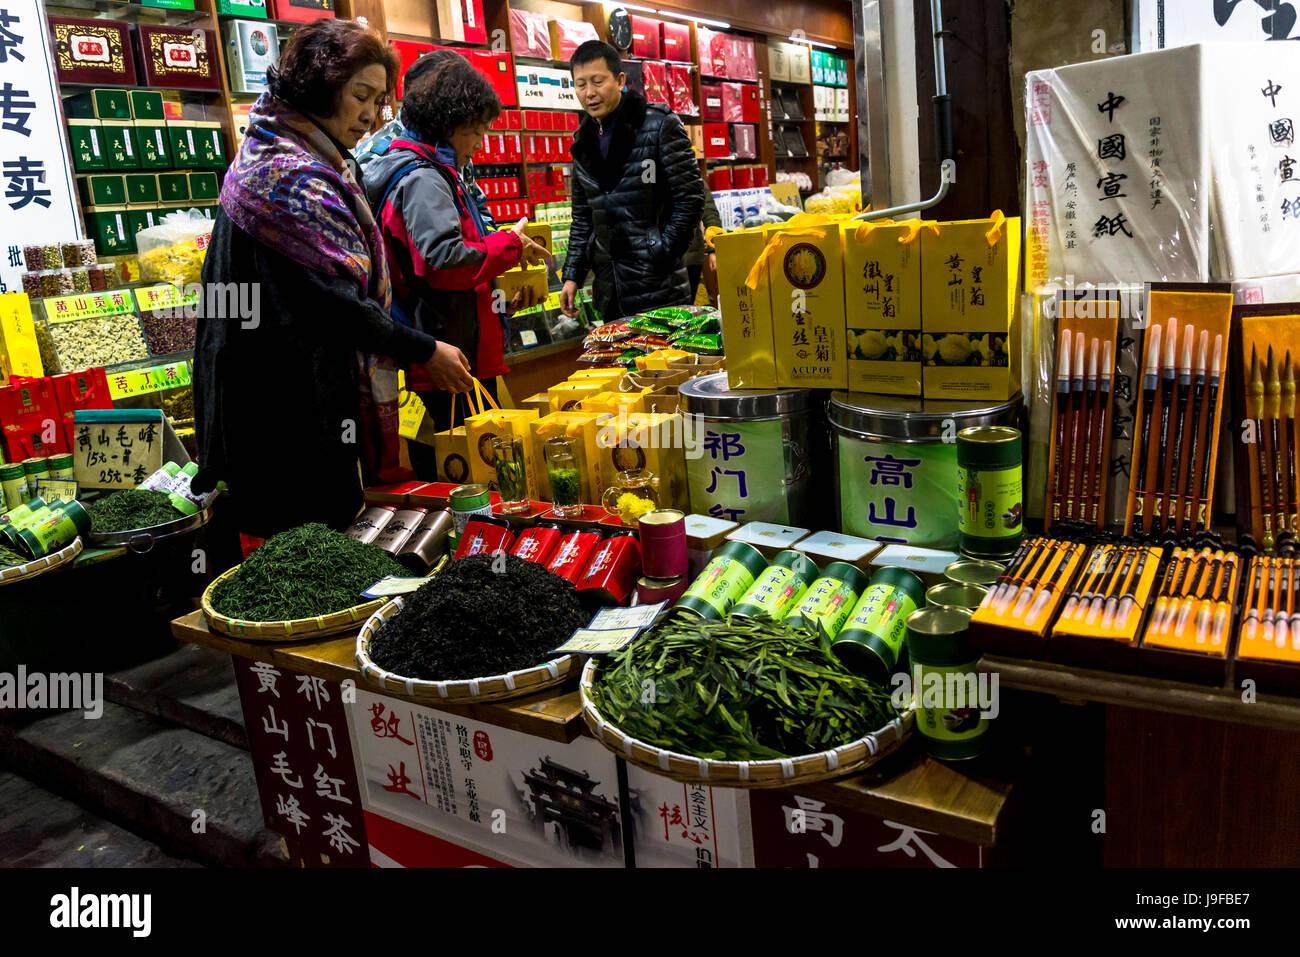 Laden mit regionalen Produkten wie grüner Tee Kekse, Tunxi alte Strasse, traditionellen Kaufhäusern, Huangshan, Anhui Provinz, China Stockfoto